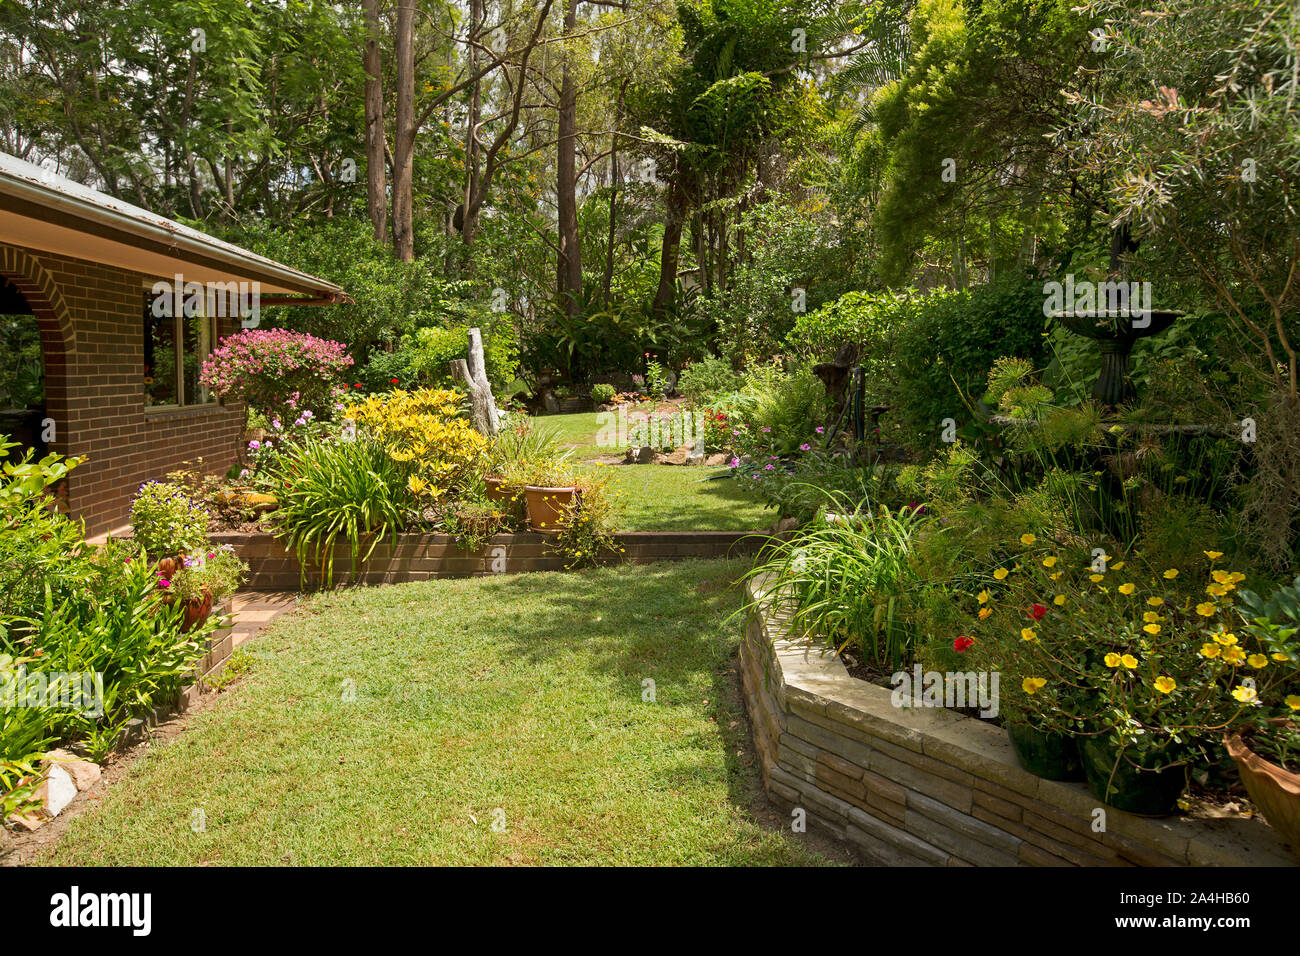 Bunten Garten mit gepflegten Rasen und Garten Betten mit Wasserspiel/Brunnen, blühende Sträucher, Stauden, Bäume neben brick House in Australien Stockfoto